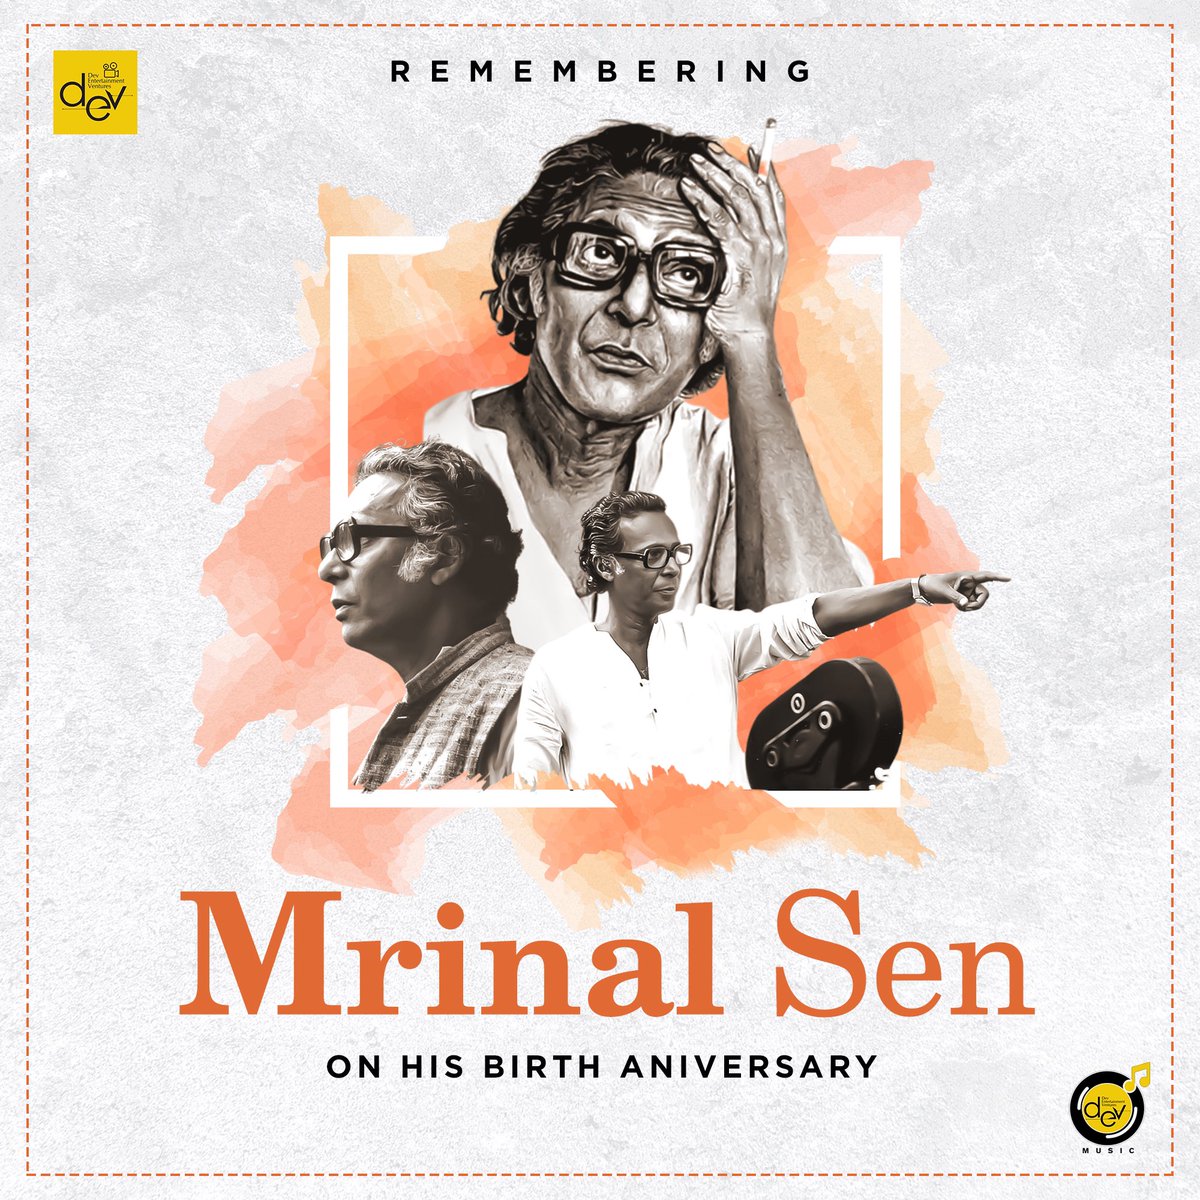 কিংবদন্তি চিত্রপরিচালক মৃণাল সেন এর জন্মদিবসে তাঁর প্রতি বিনম্র শ্রদ্ধাঞ্জলি। #RememberingMrinalSen